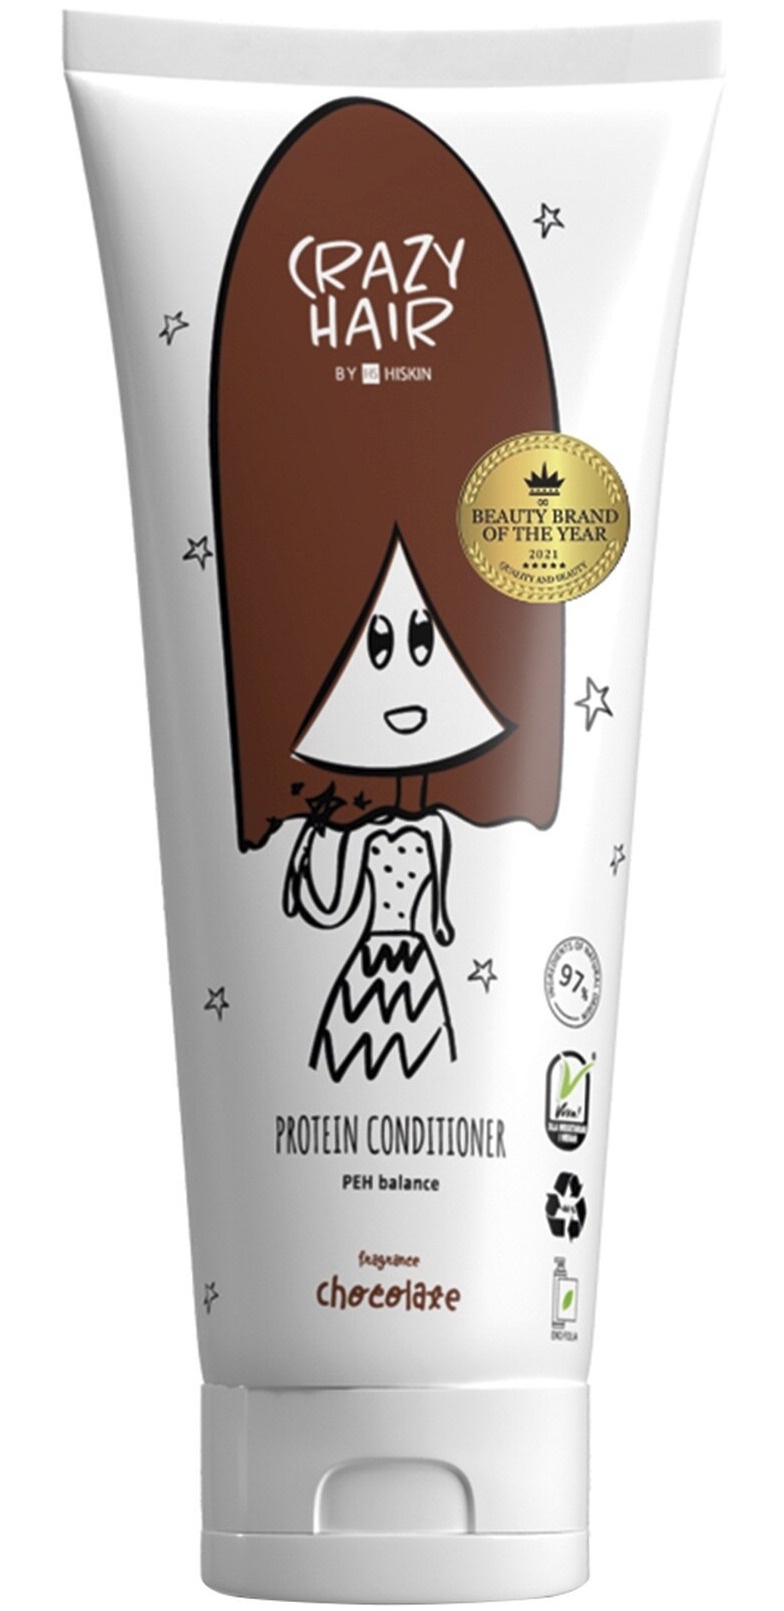 Hiskin Crazy Hair Protein Conditioner Chocolate